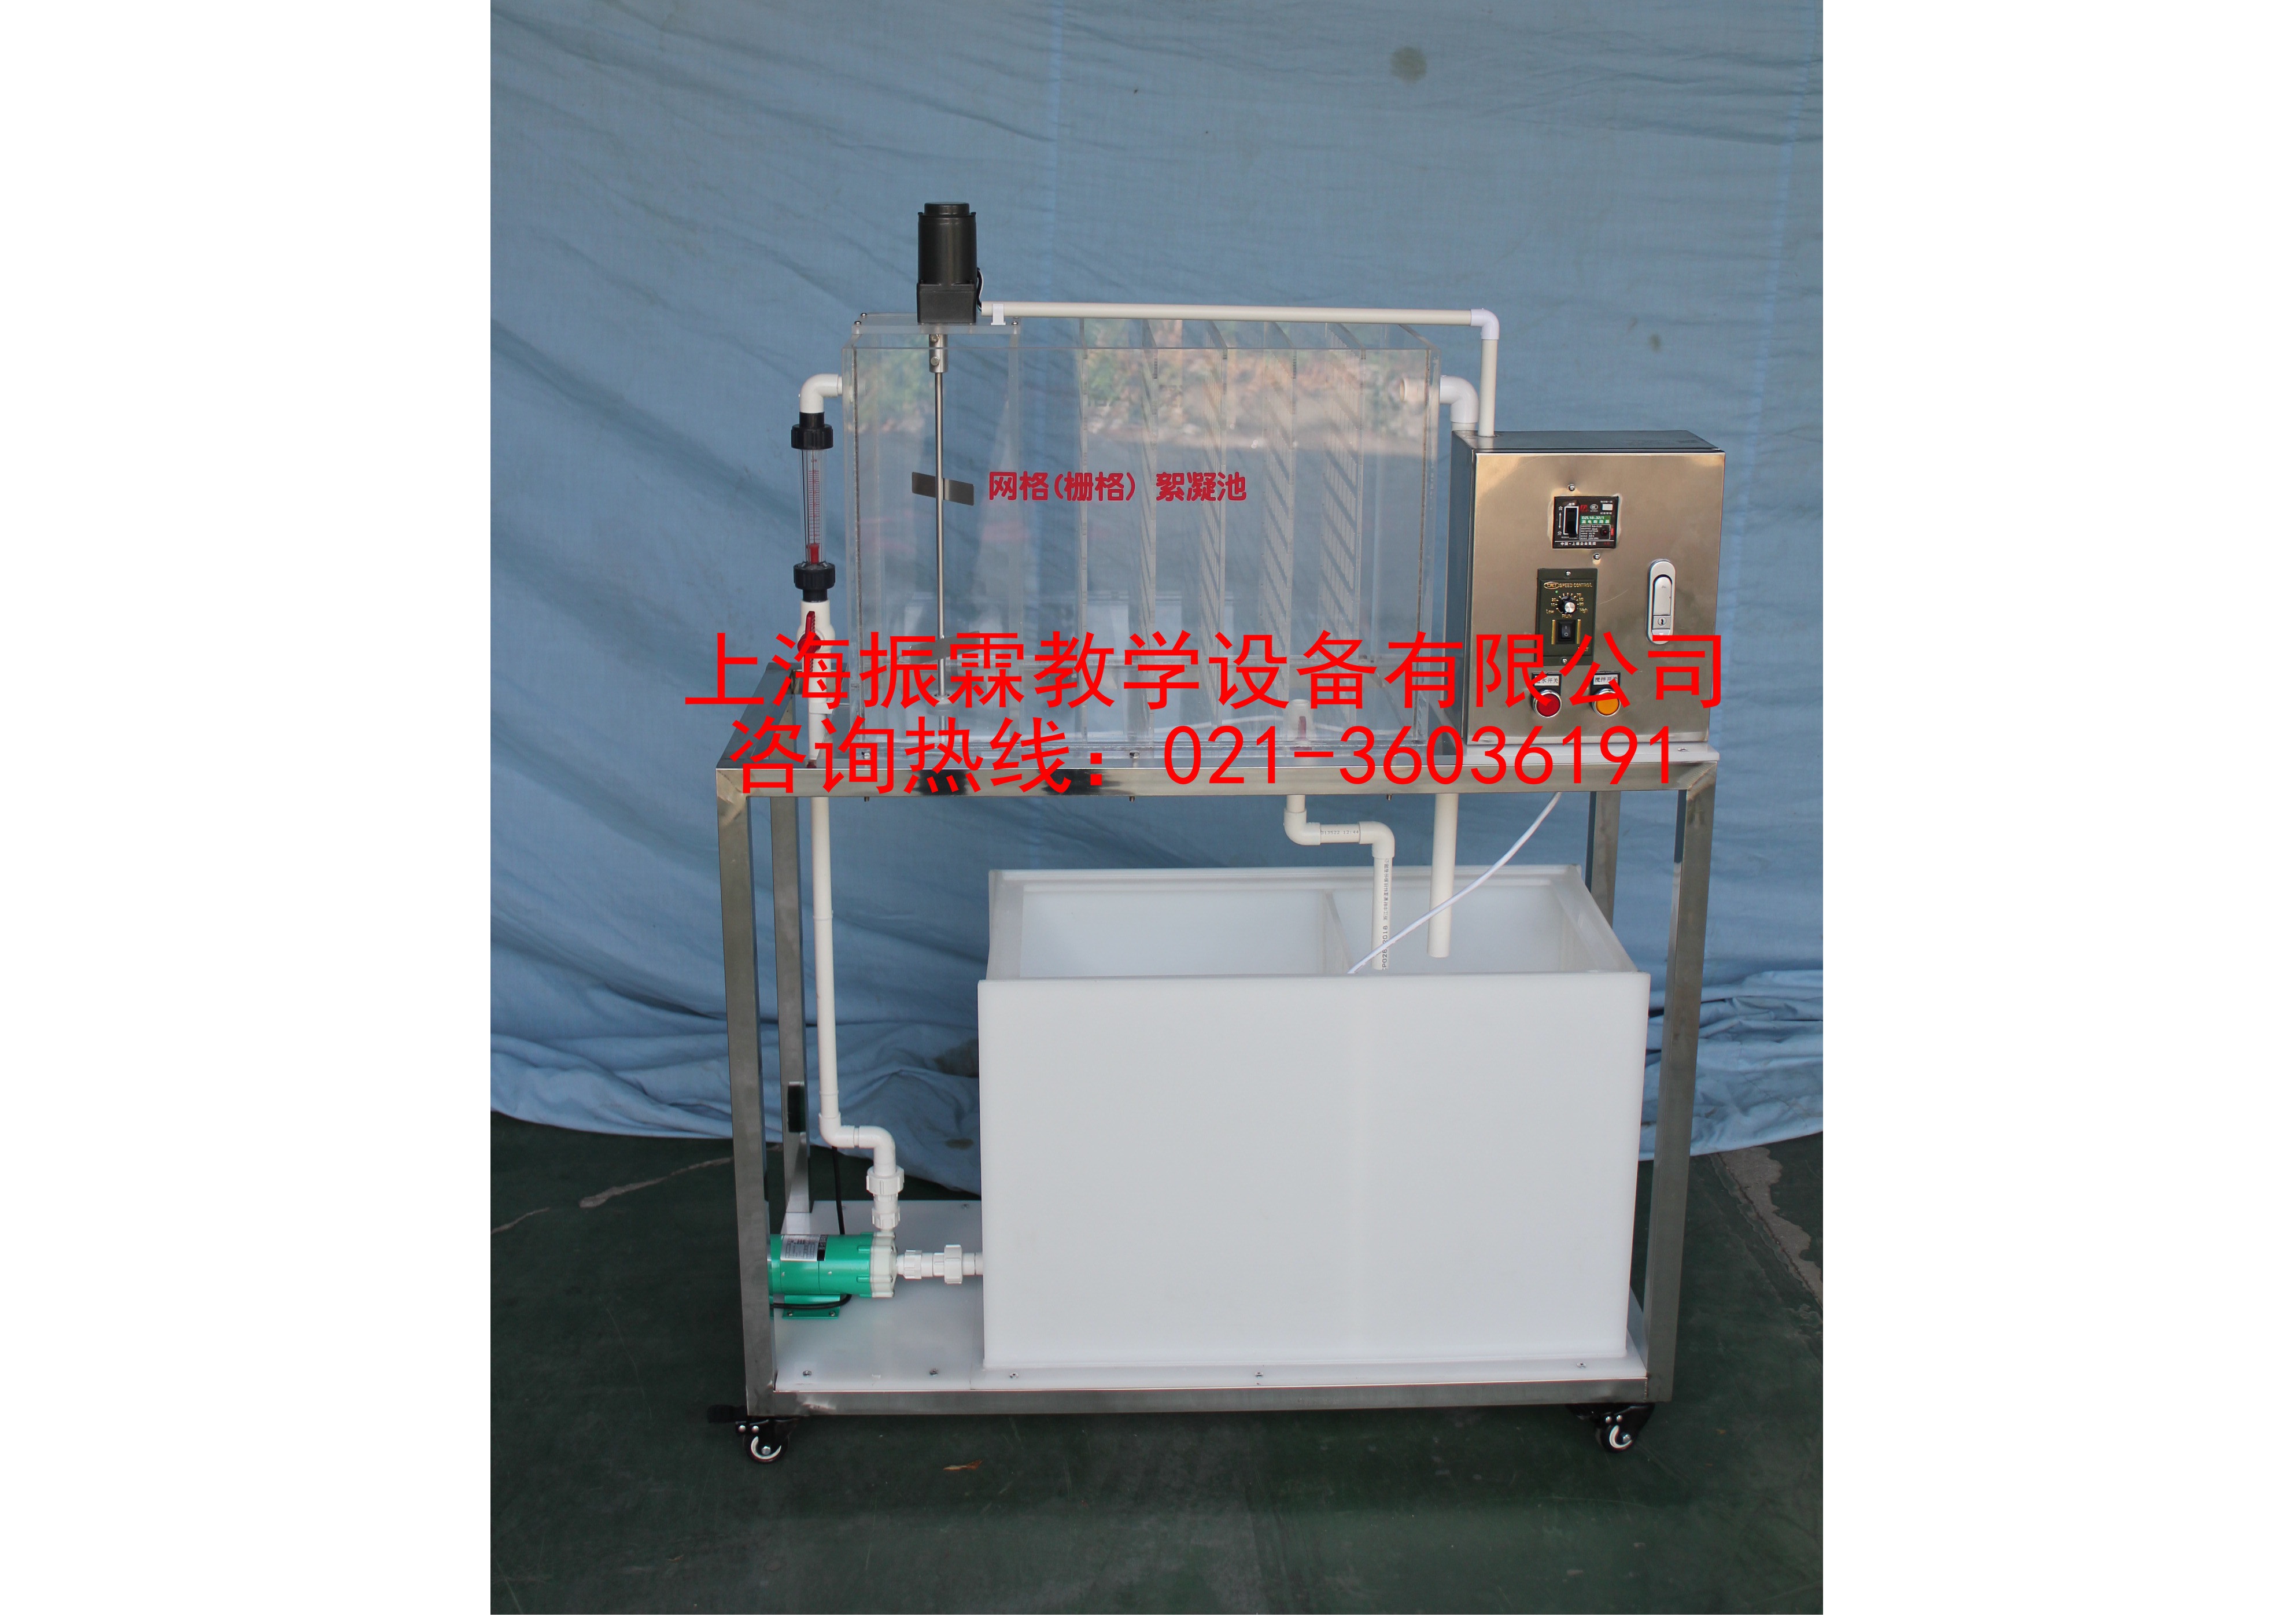 网格栅格絮凝池系统,网格栅格絮凝池装置,水处理实验装置--上海振霖教学设备有限公司